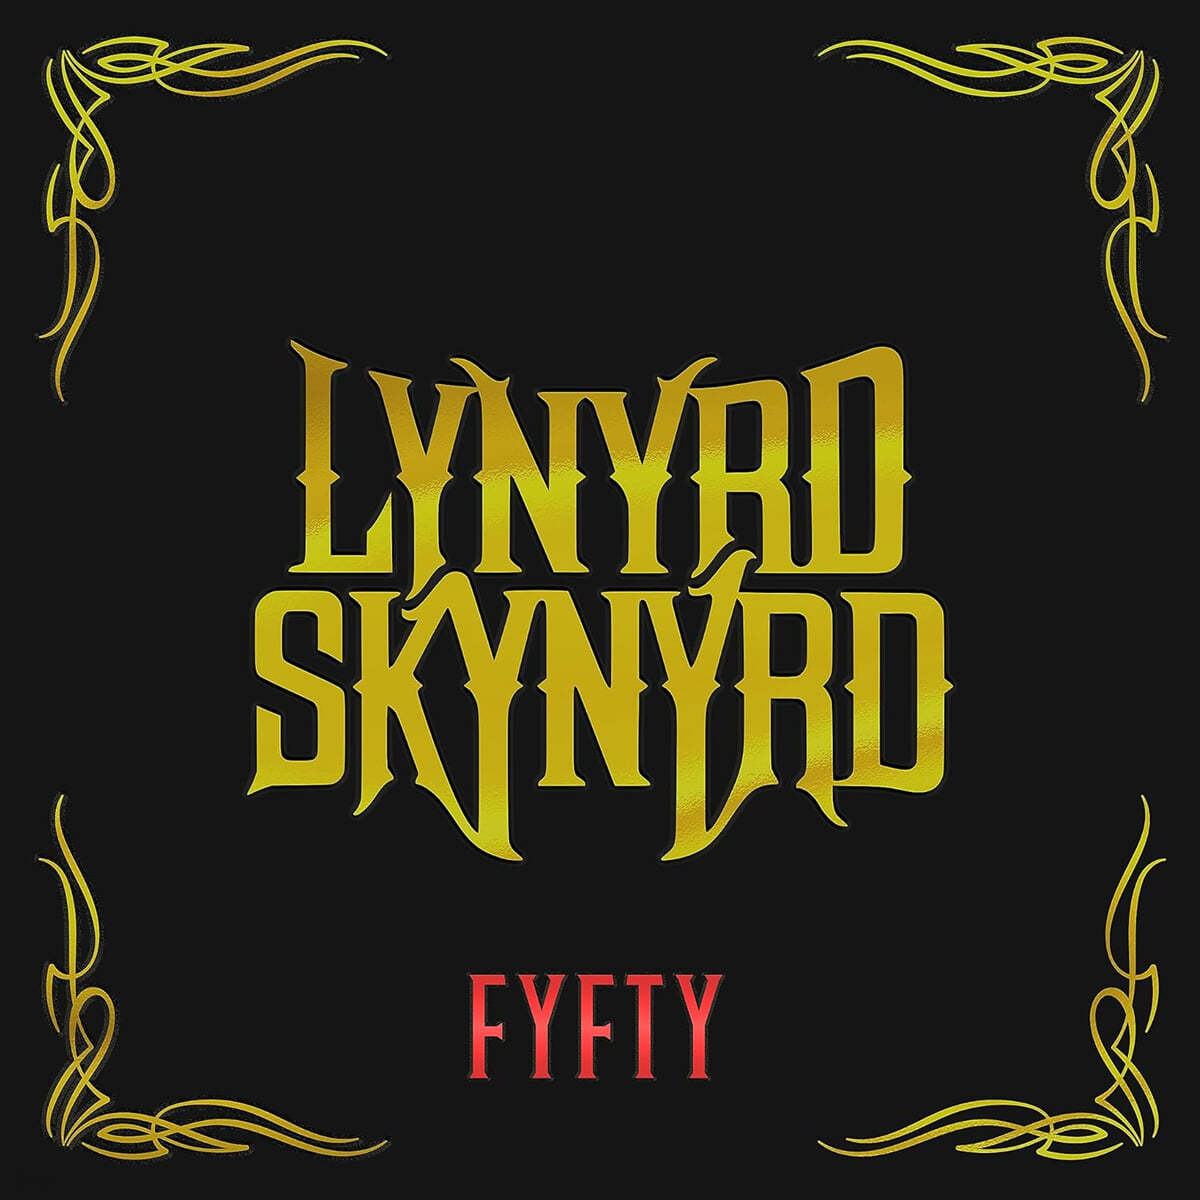 Lynyrd Skynyrd (레너드 스키너드) - FYFTY  [Super Deluxe Edition]